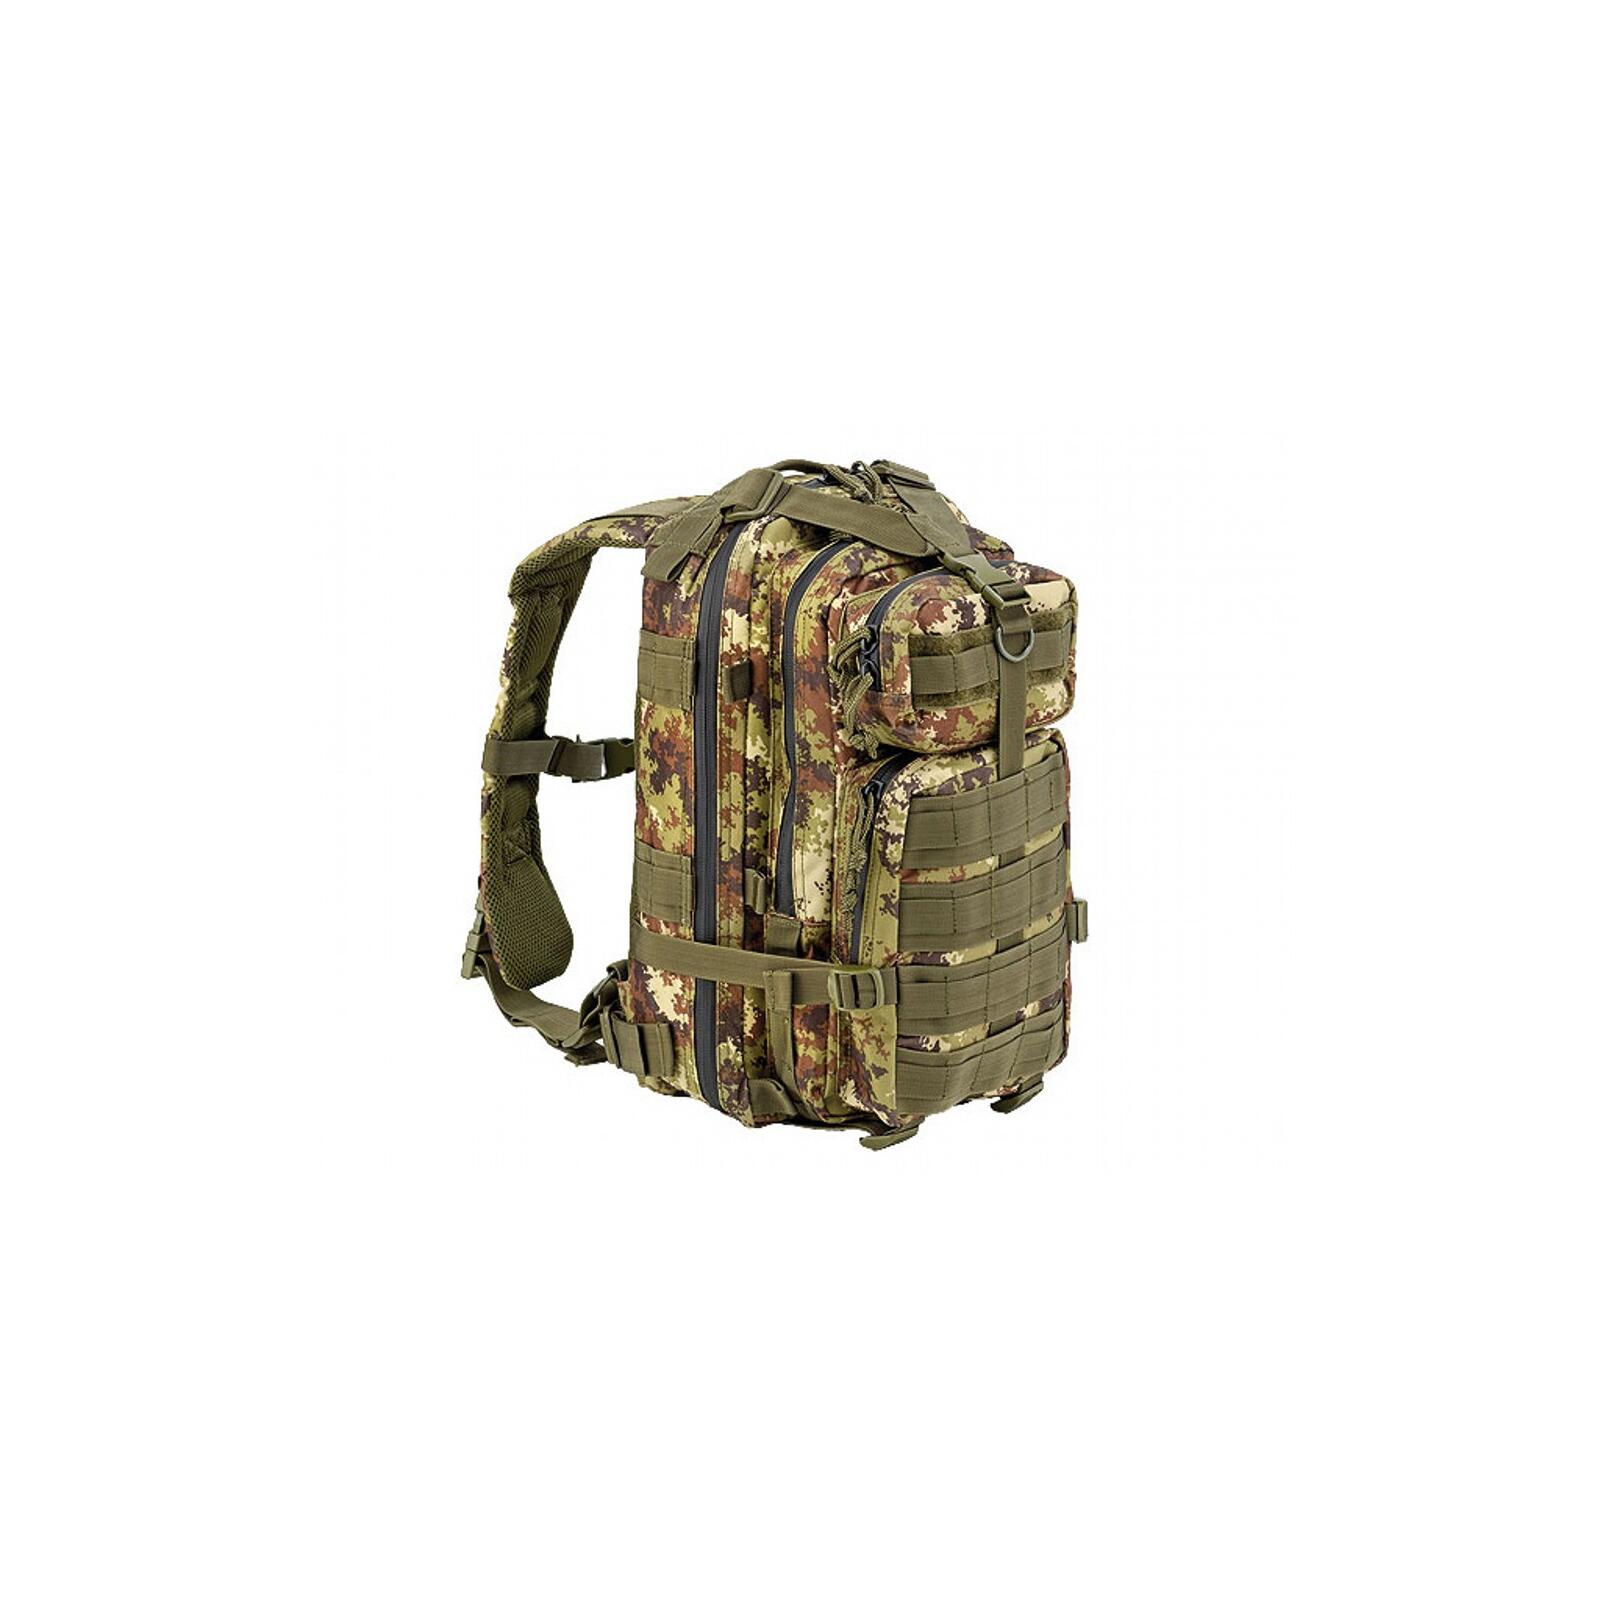 Defcon 5 Tactical Backpack Rucksack 35L Italian Camo